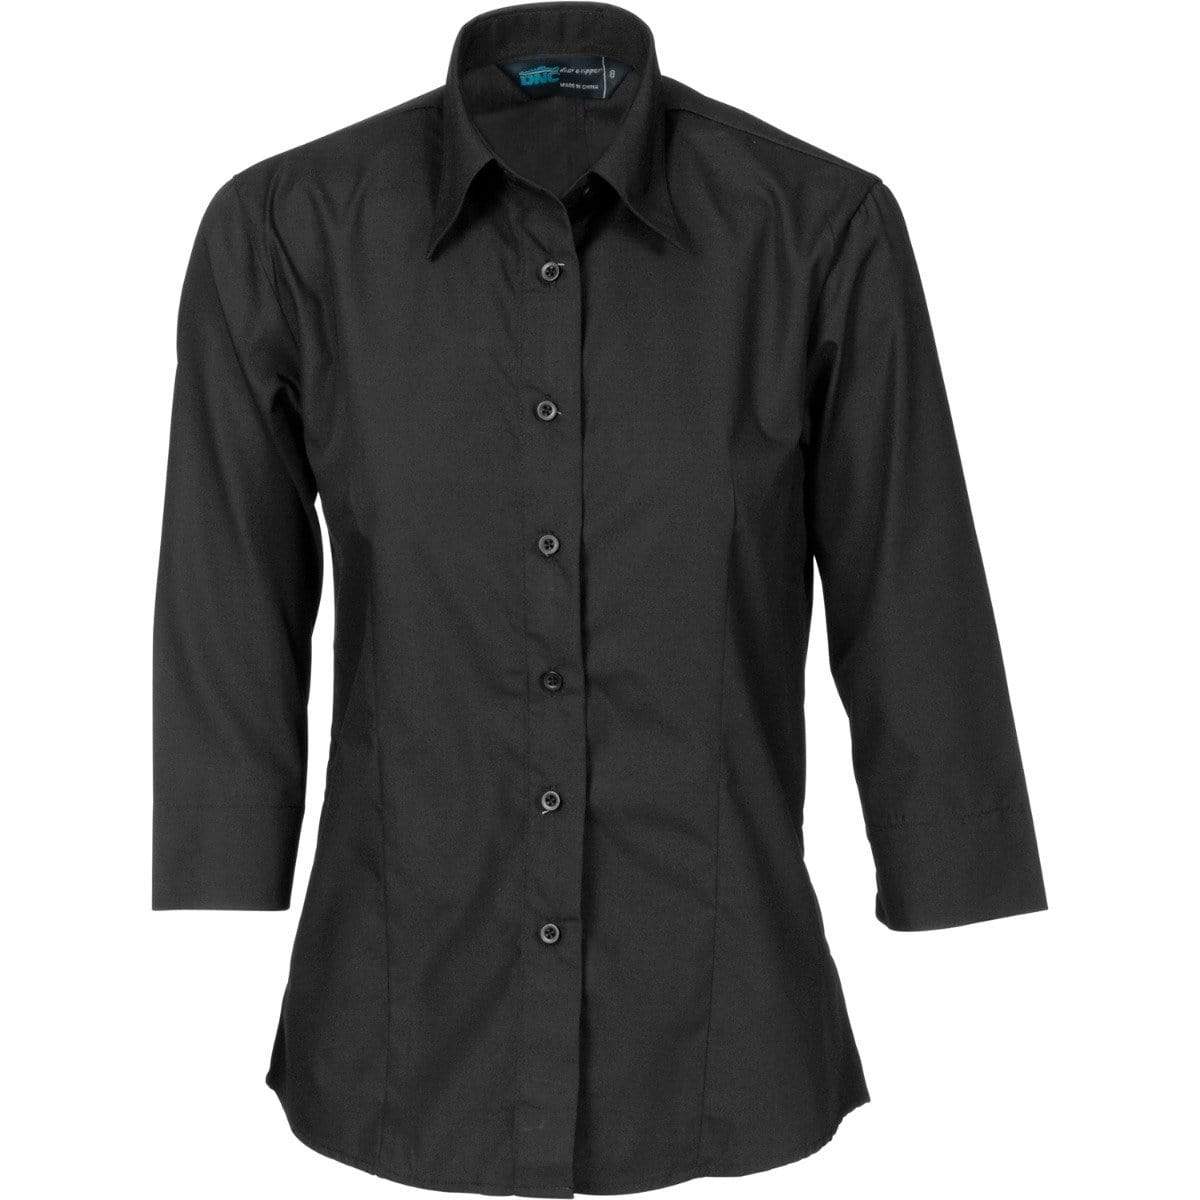 DNC WORKWEAR Ladies Polyester 3/4 Sleeve Cotton Shirt 4203 - Simply Scrubs Australia